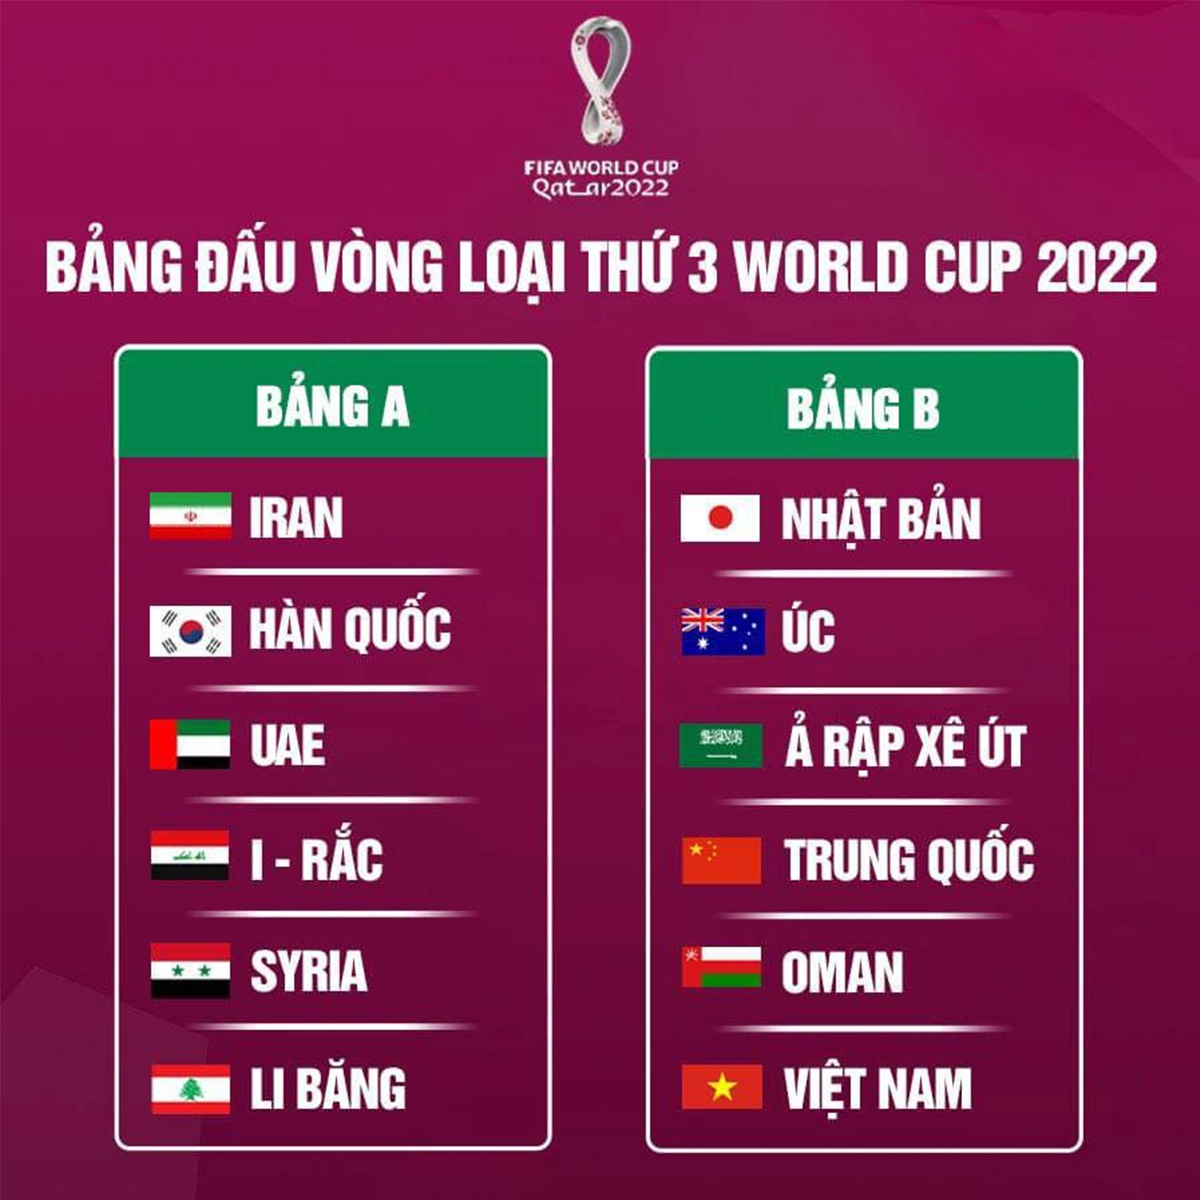 Việt Nam chung bảng với những đối thủ rất mạnh